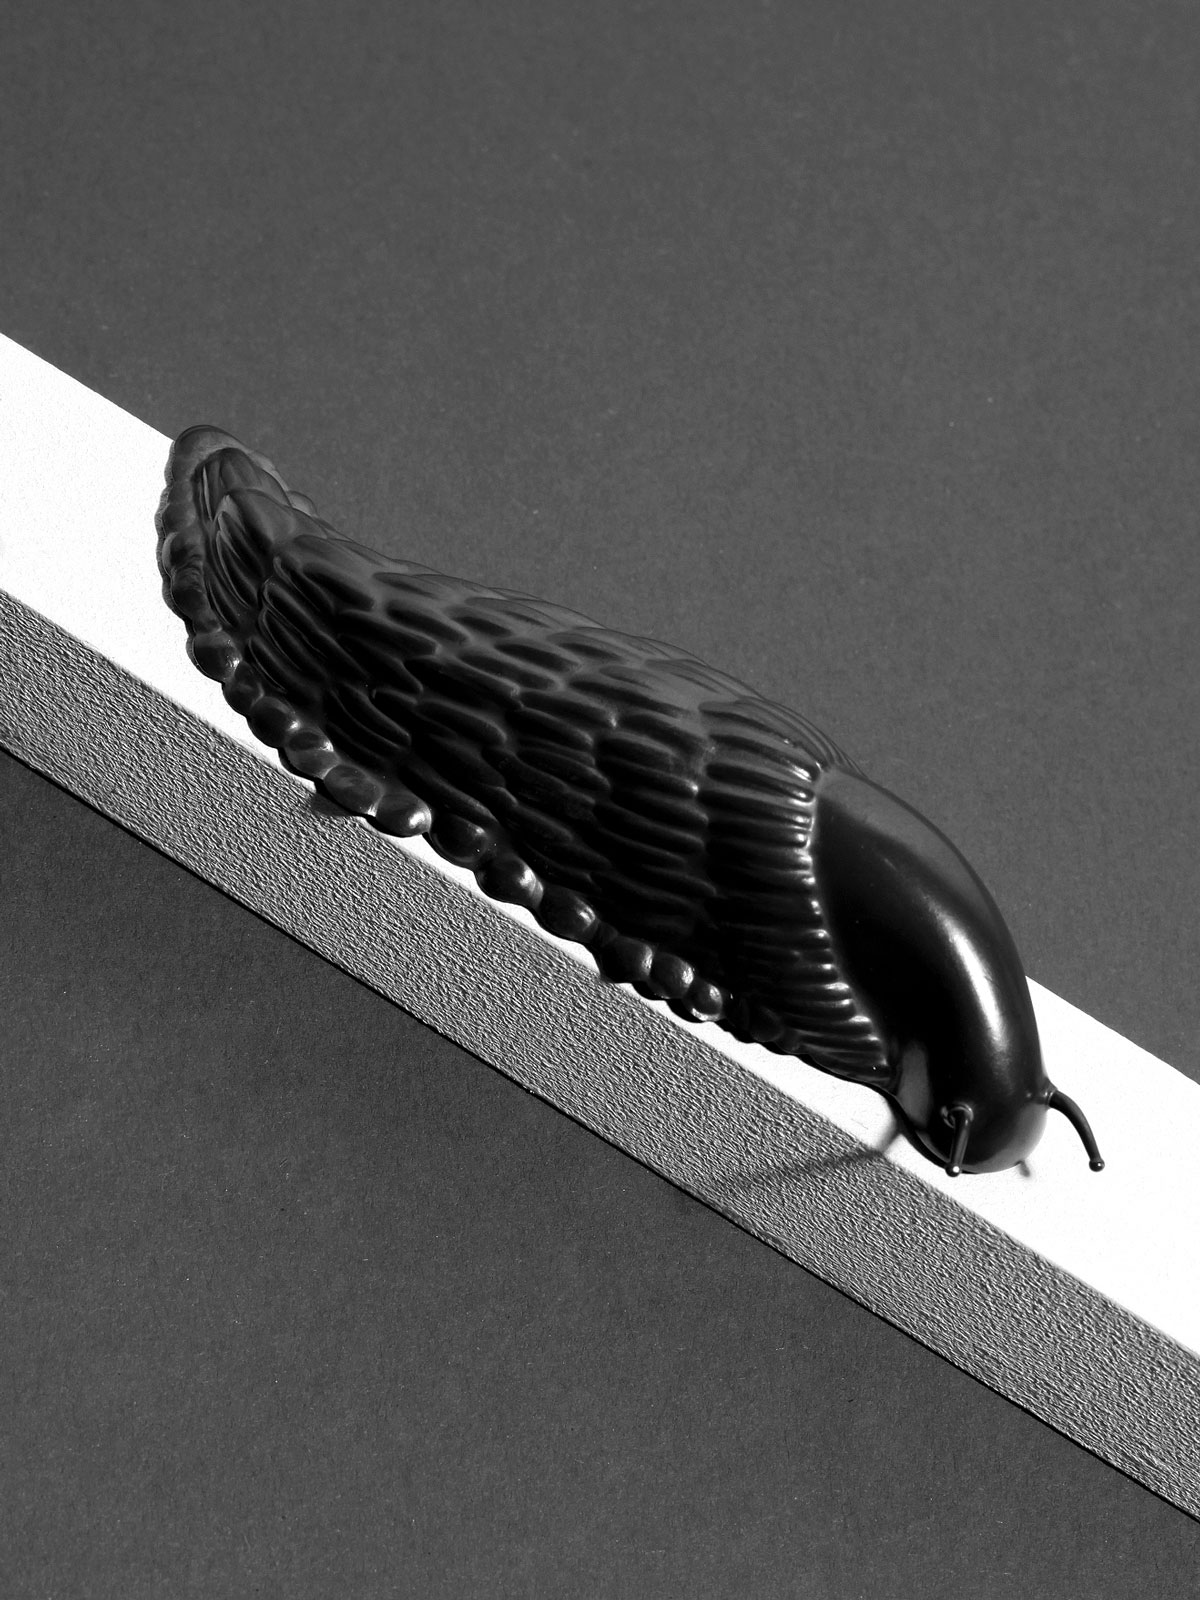 Slug (brooch), 2004